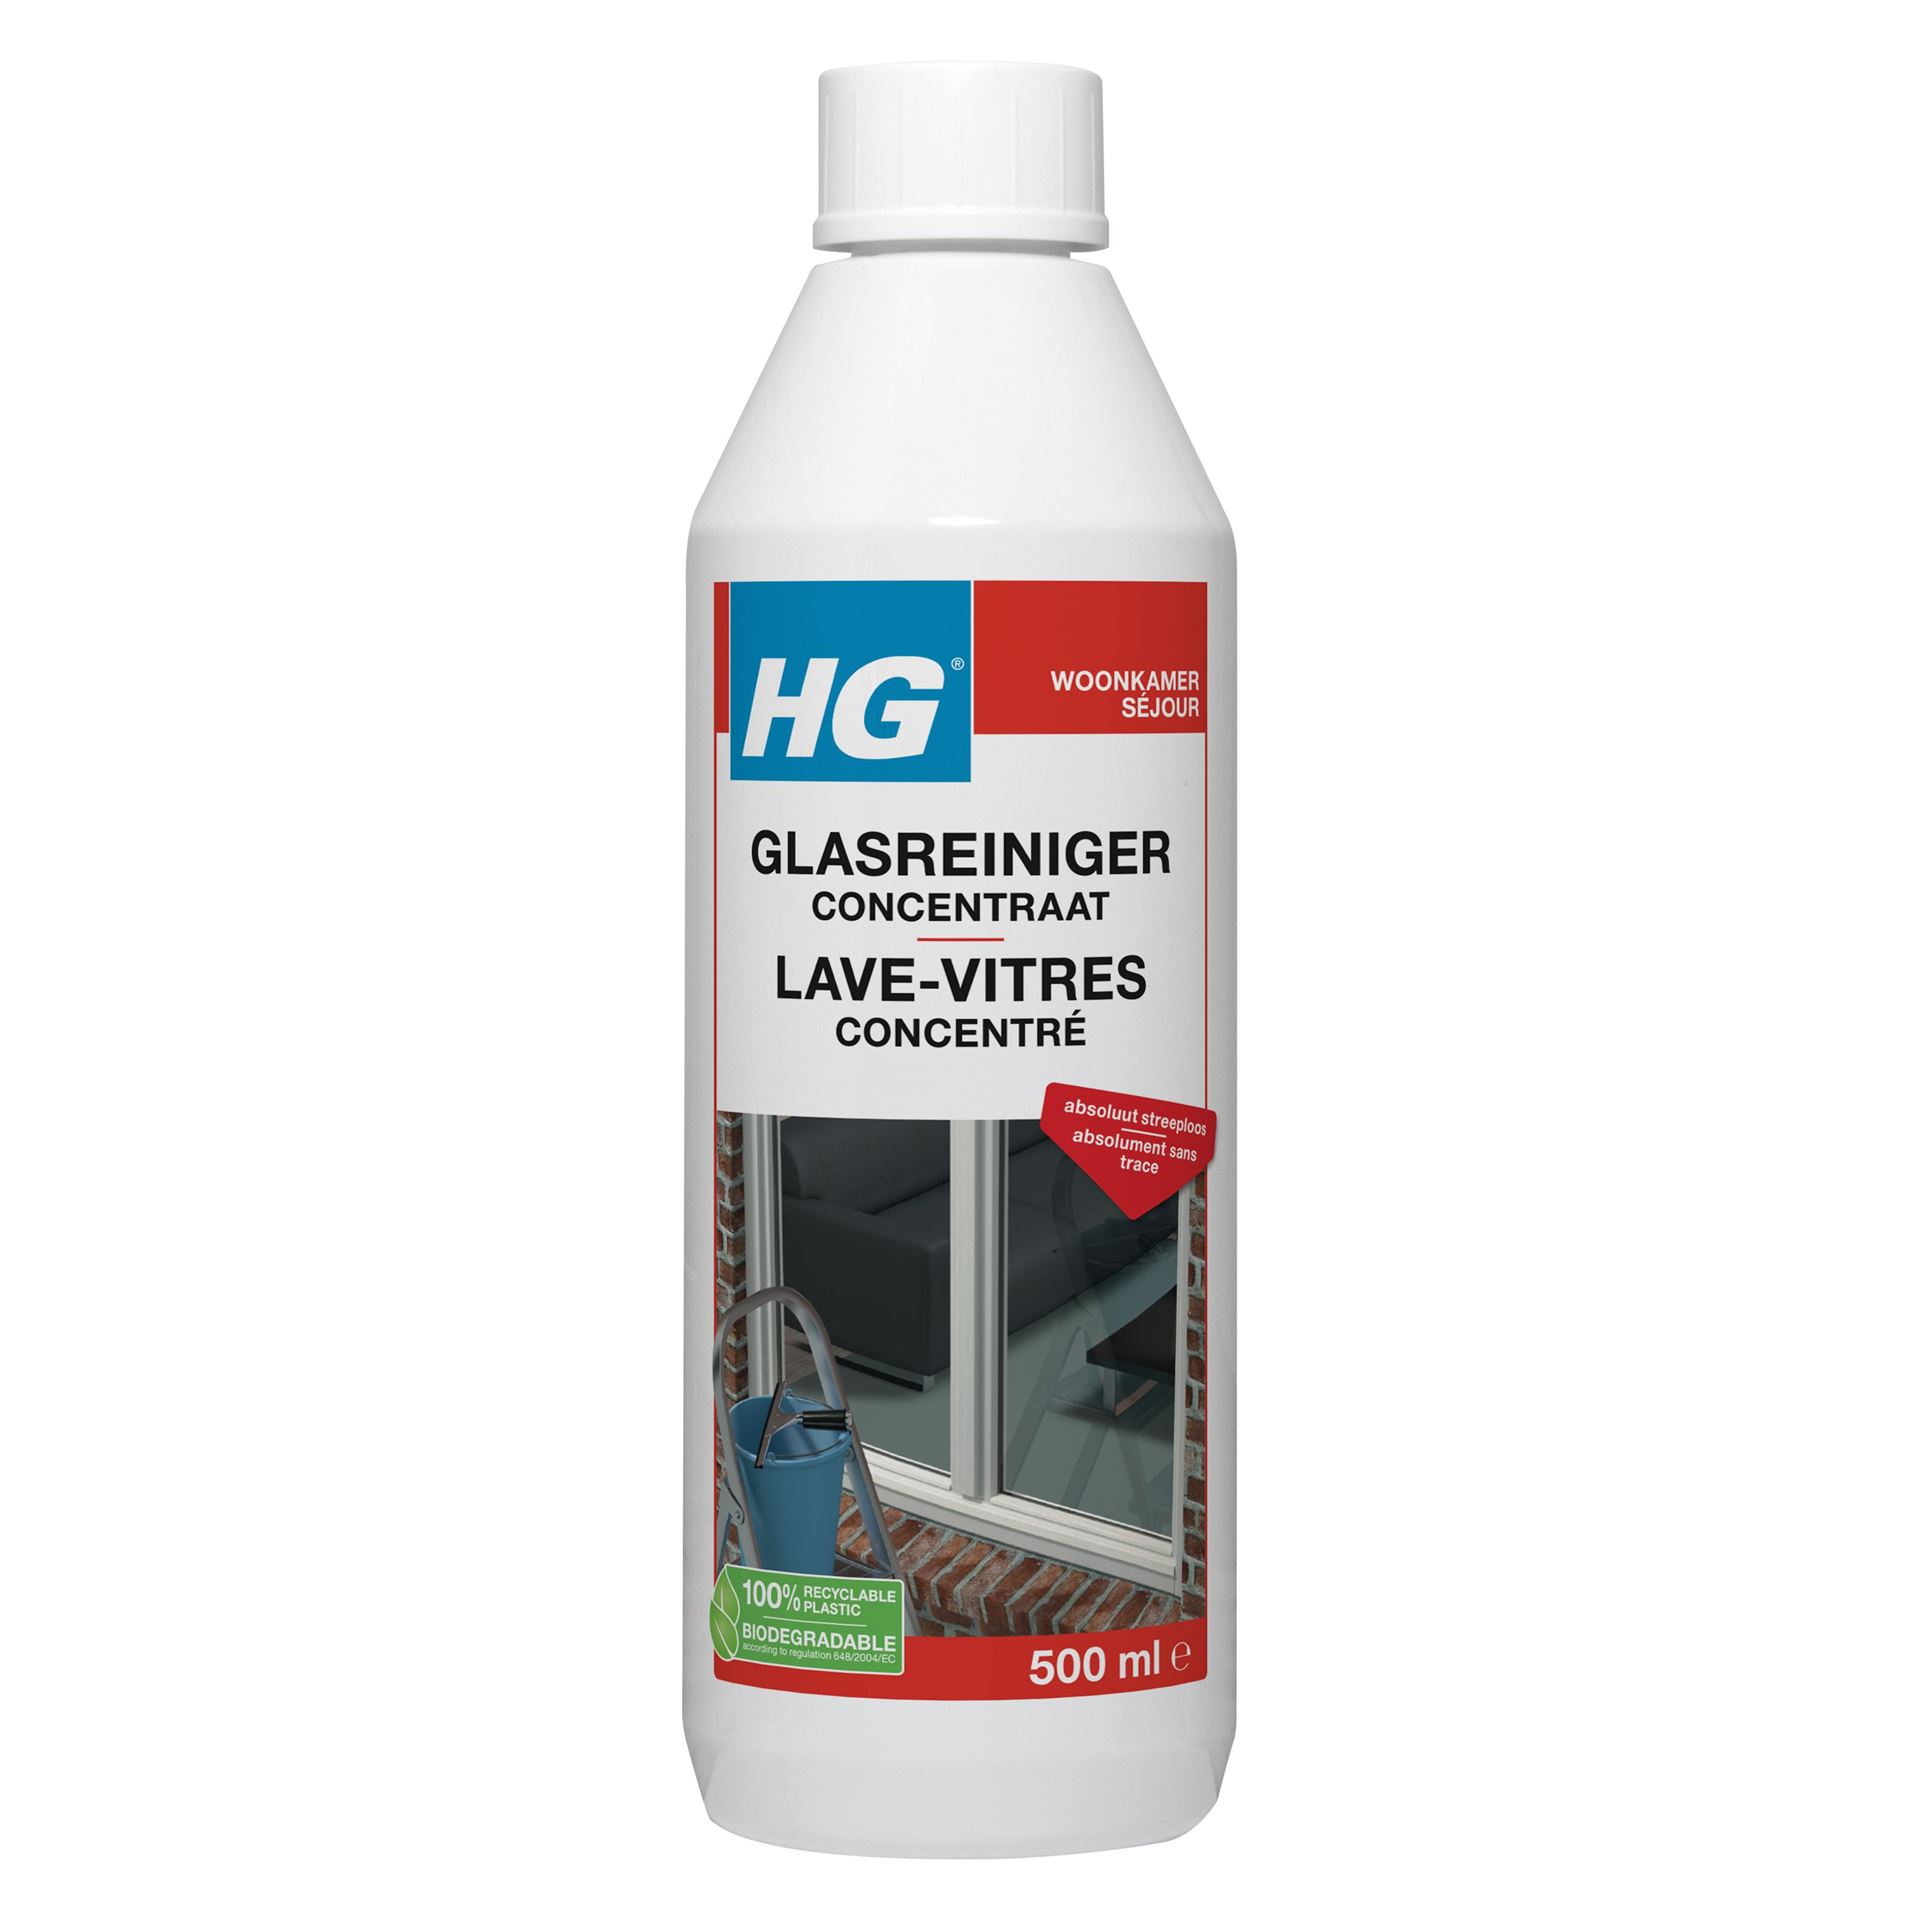 HG-glazenwasser-500ml